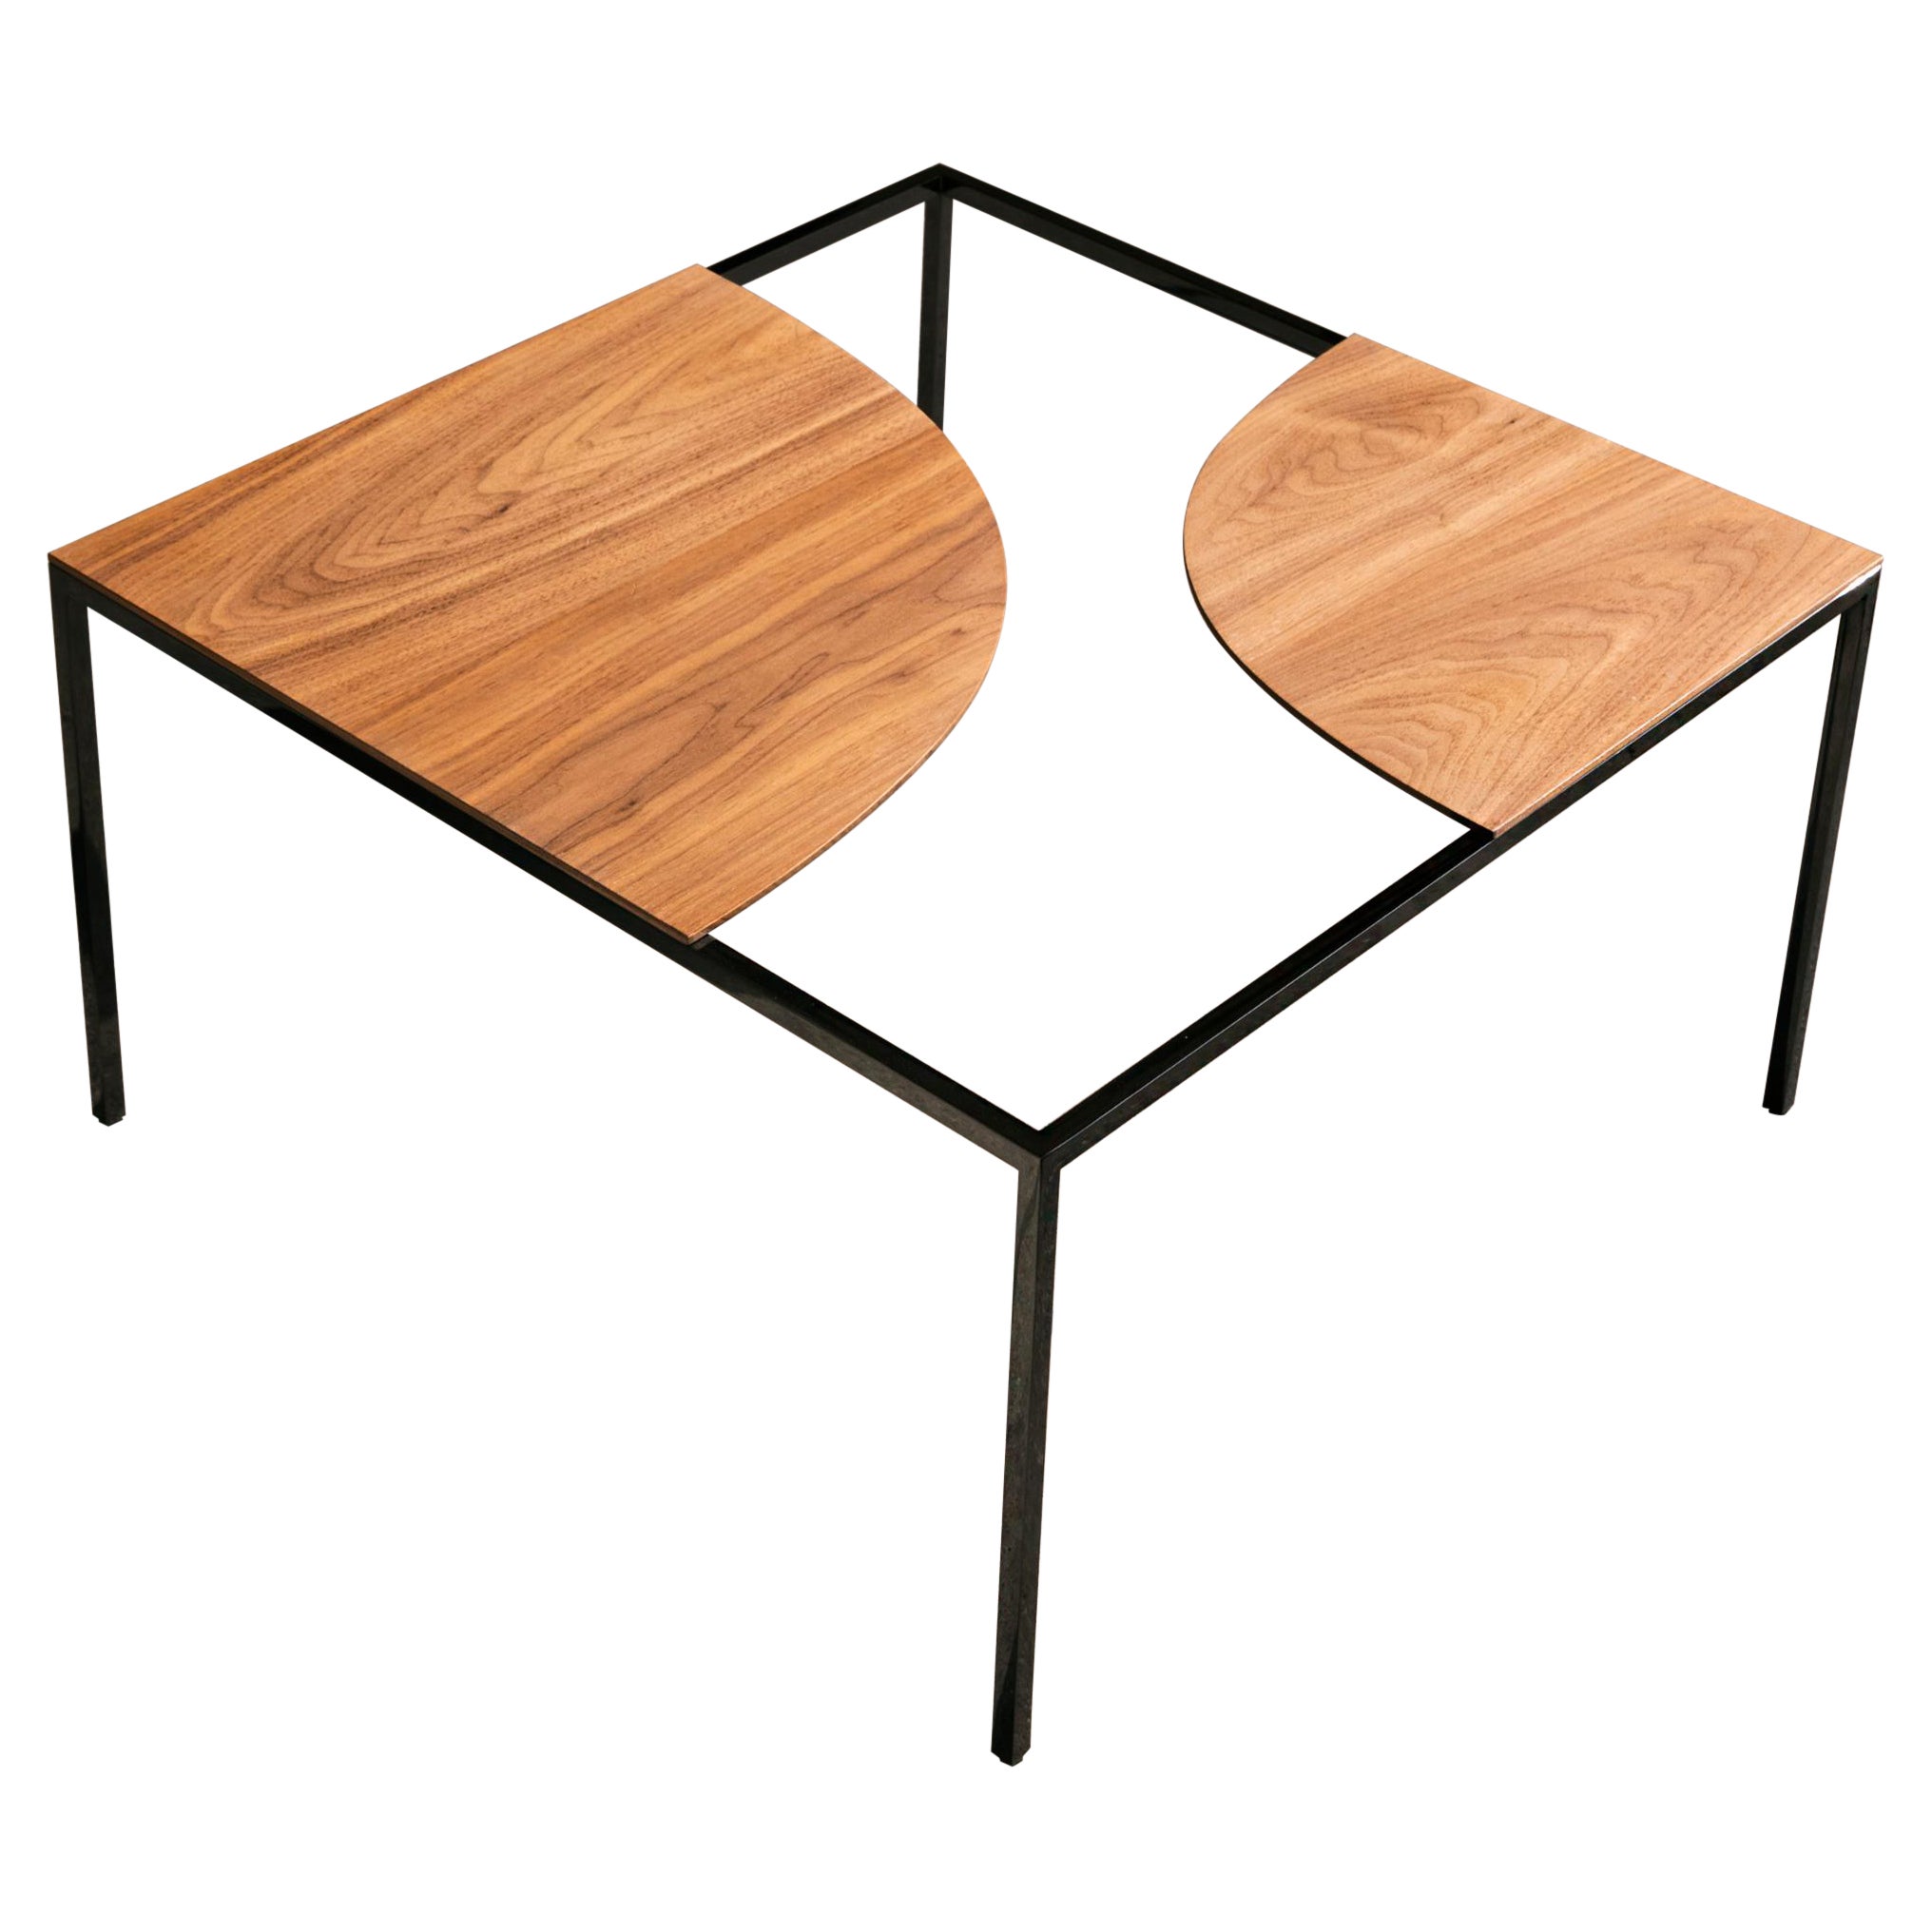 La Manufacture-Paris Creek Table Designed by Nendo